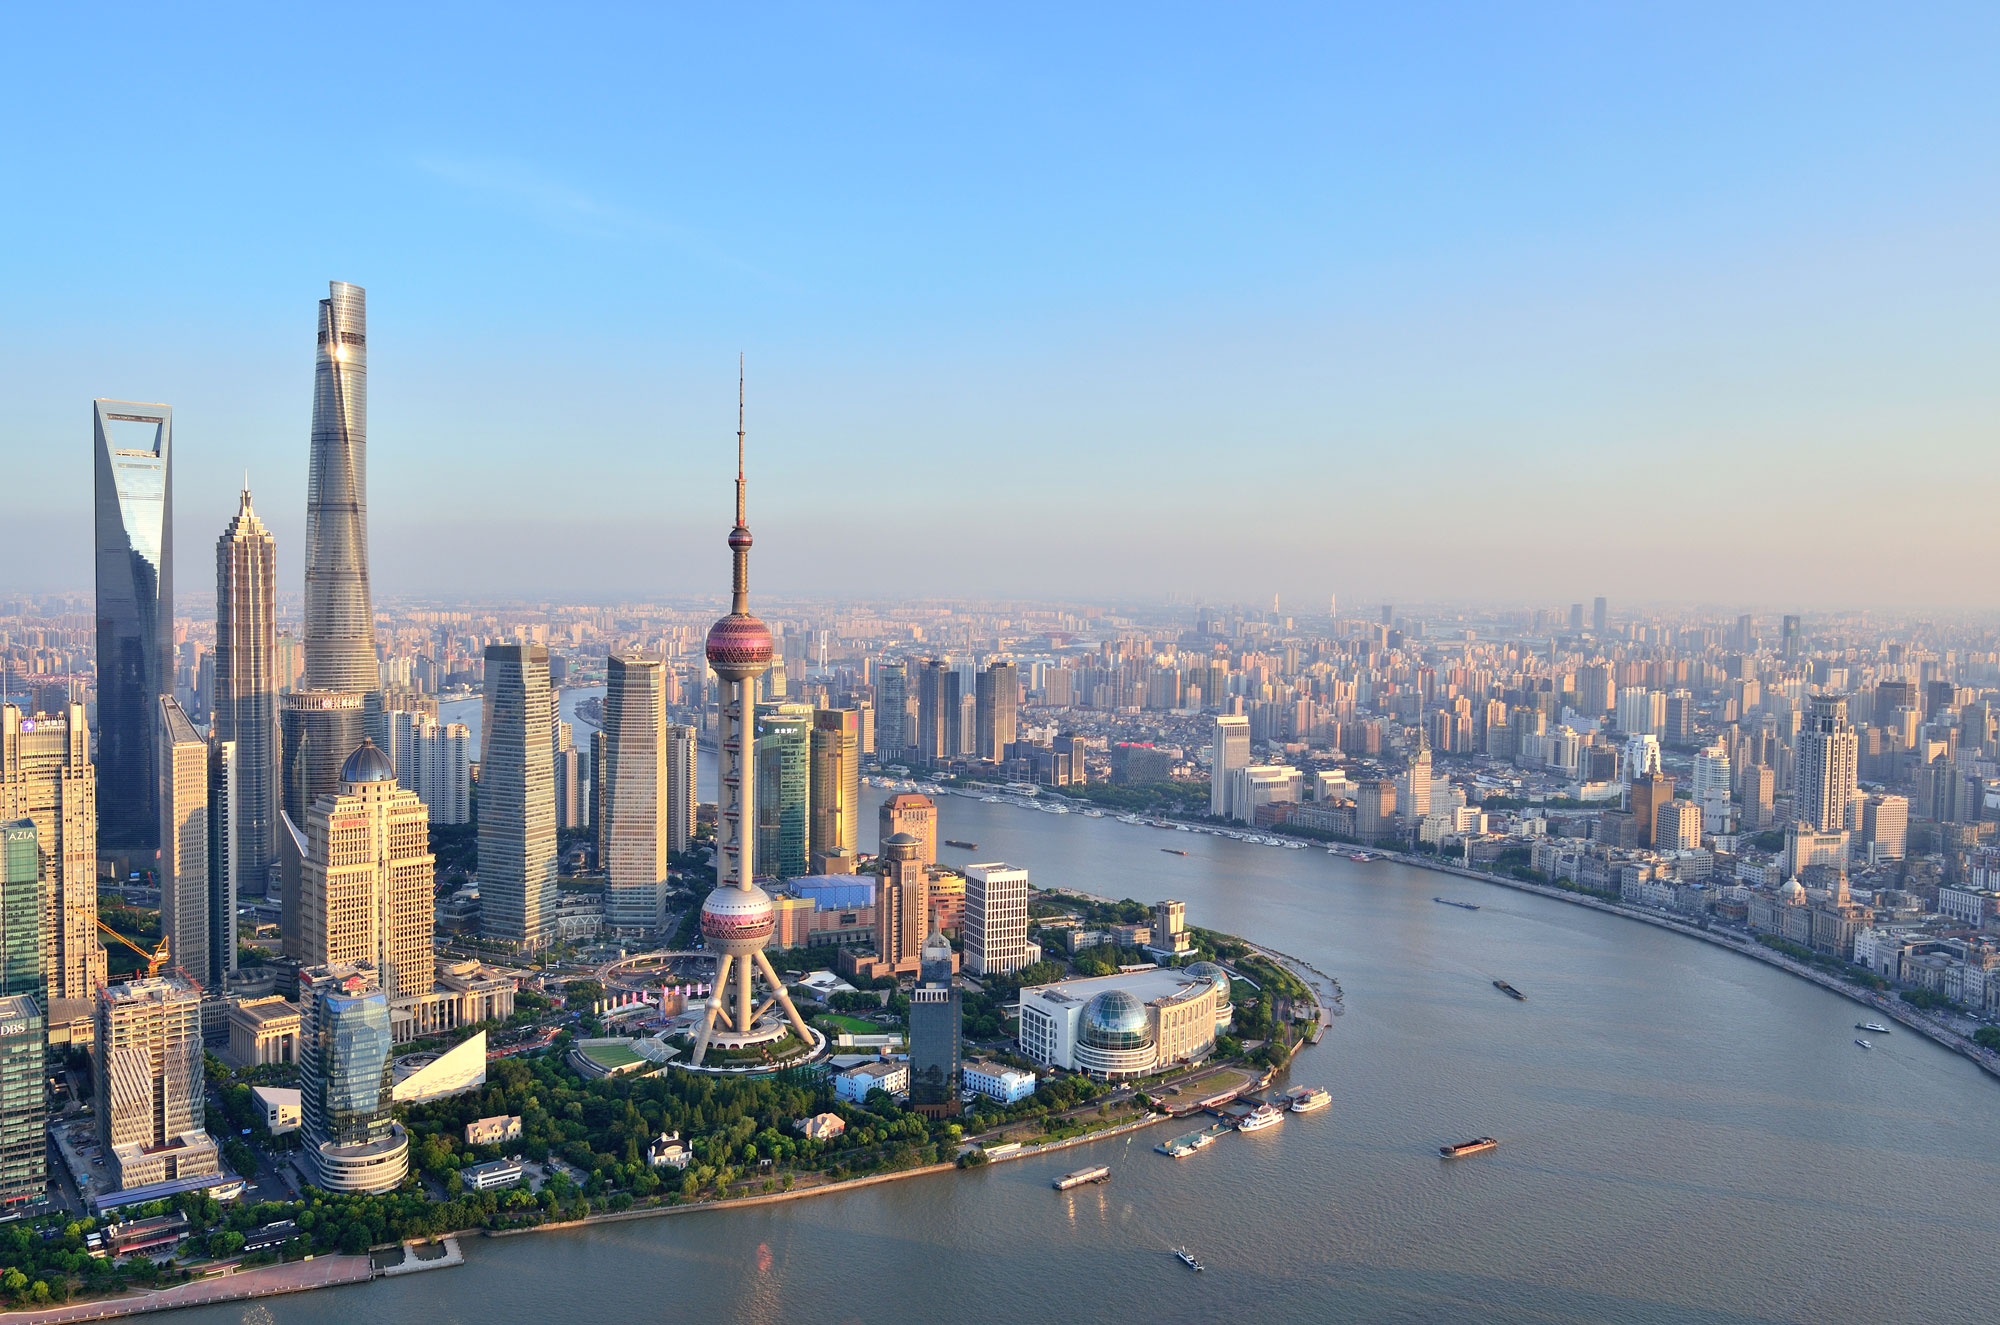 Brattle集团在北京和上海开设办公室以拓展其全球业务，这是该经济咨询机构首次进入中国市场。